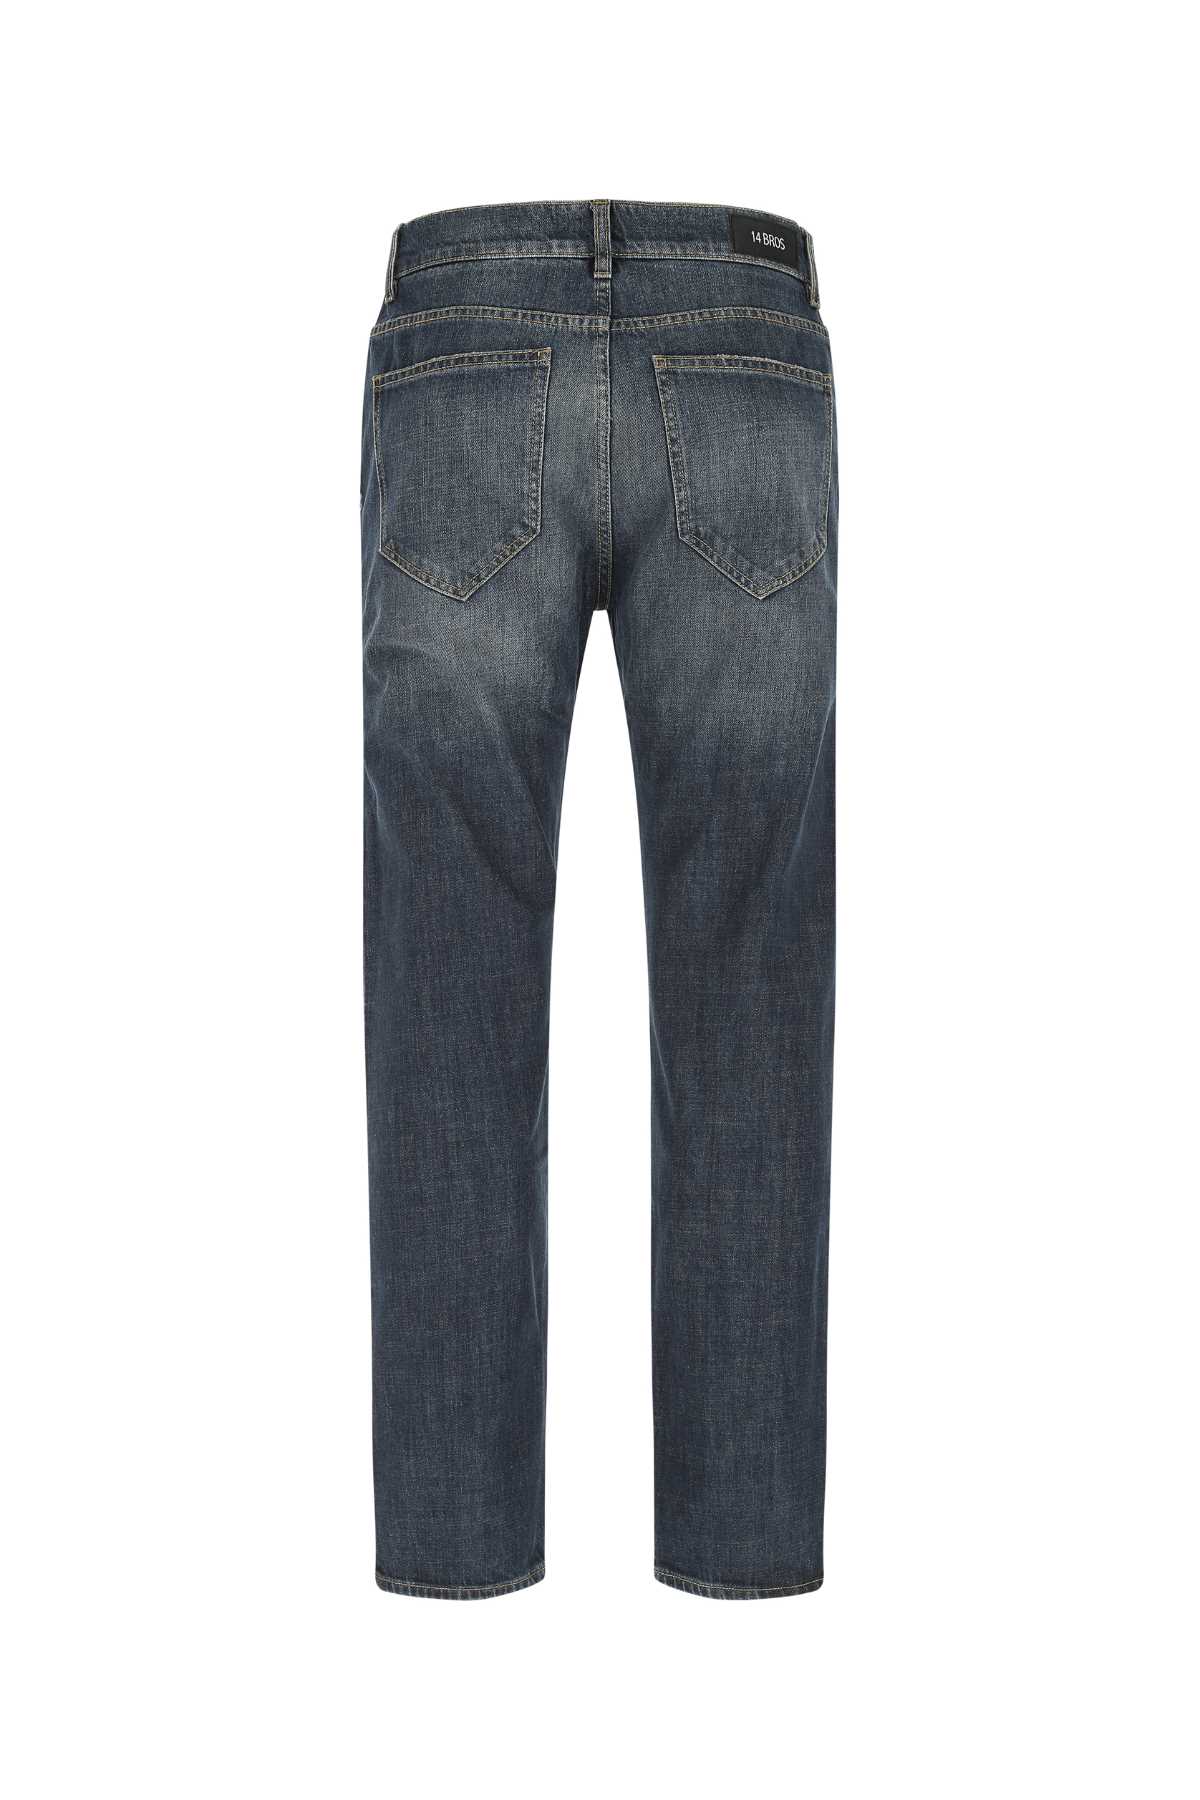 14 Bros Denim Cheswick Jeans In 9149